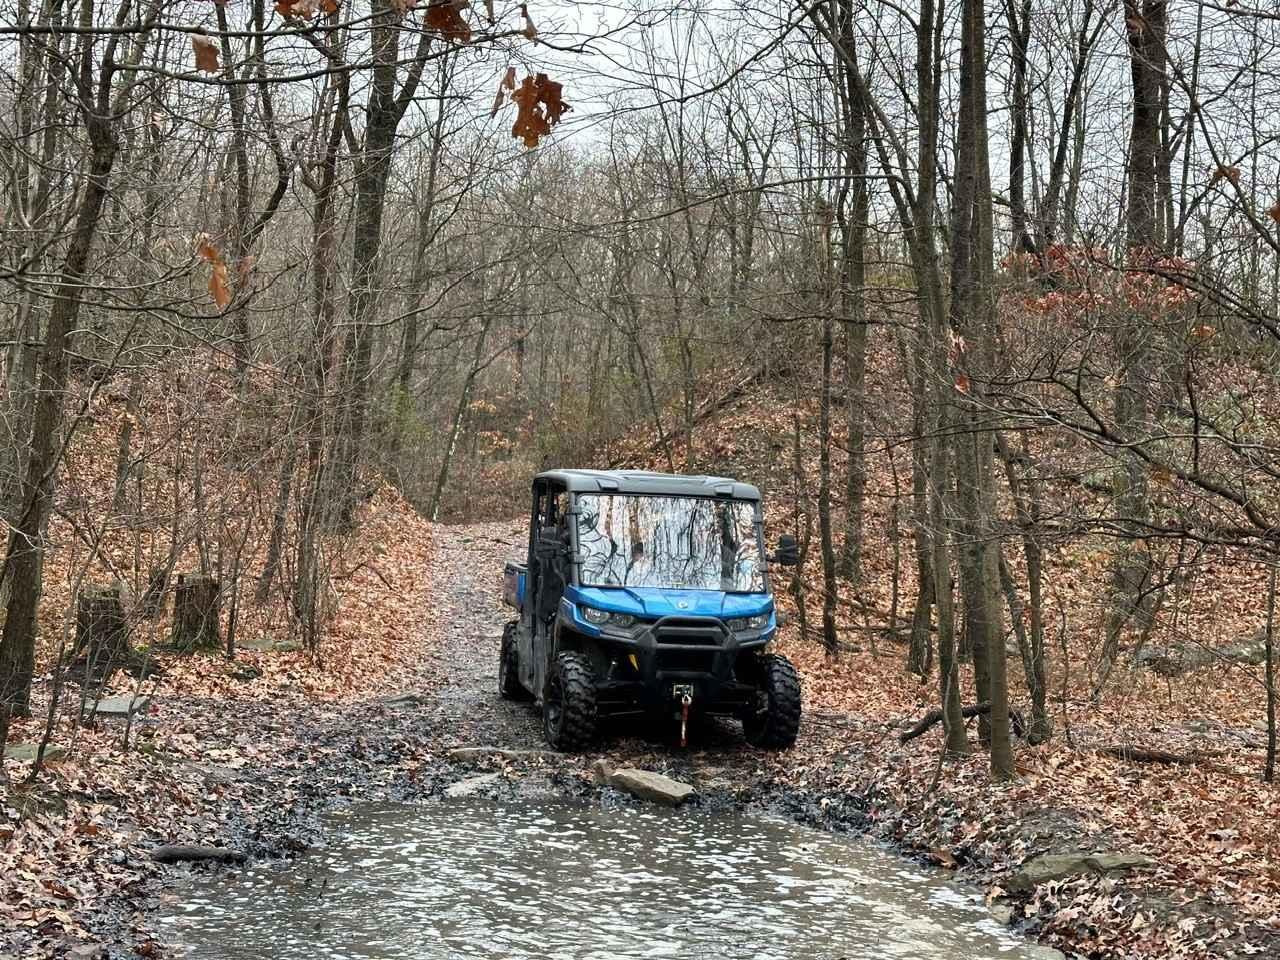 ATV Trail 63